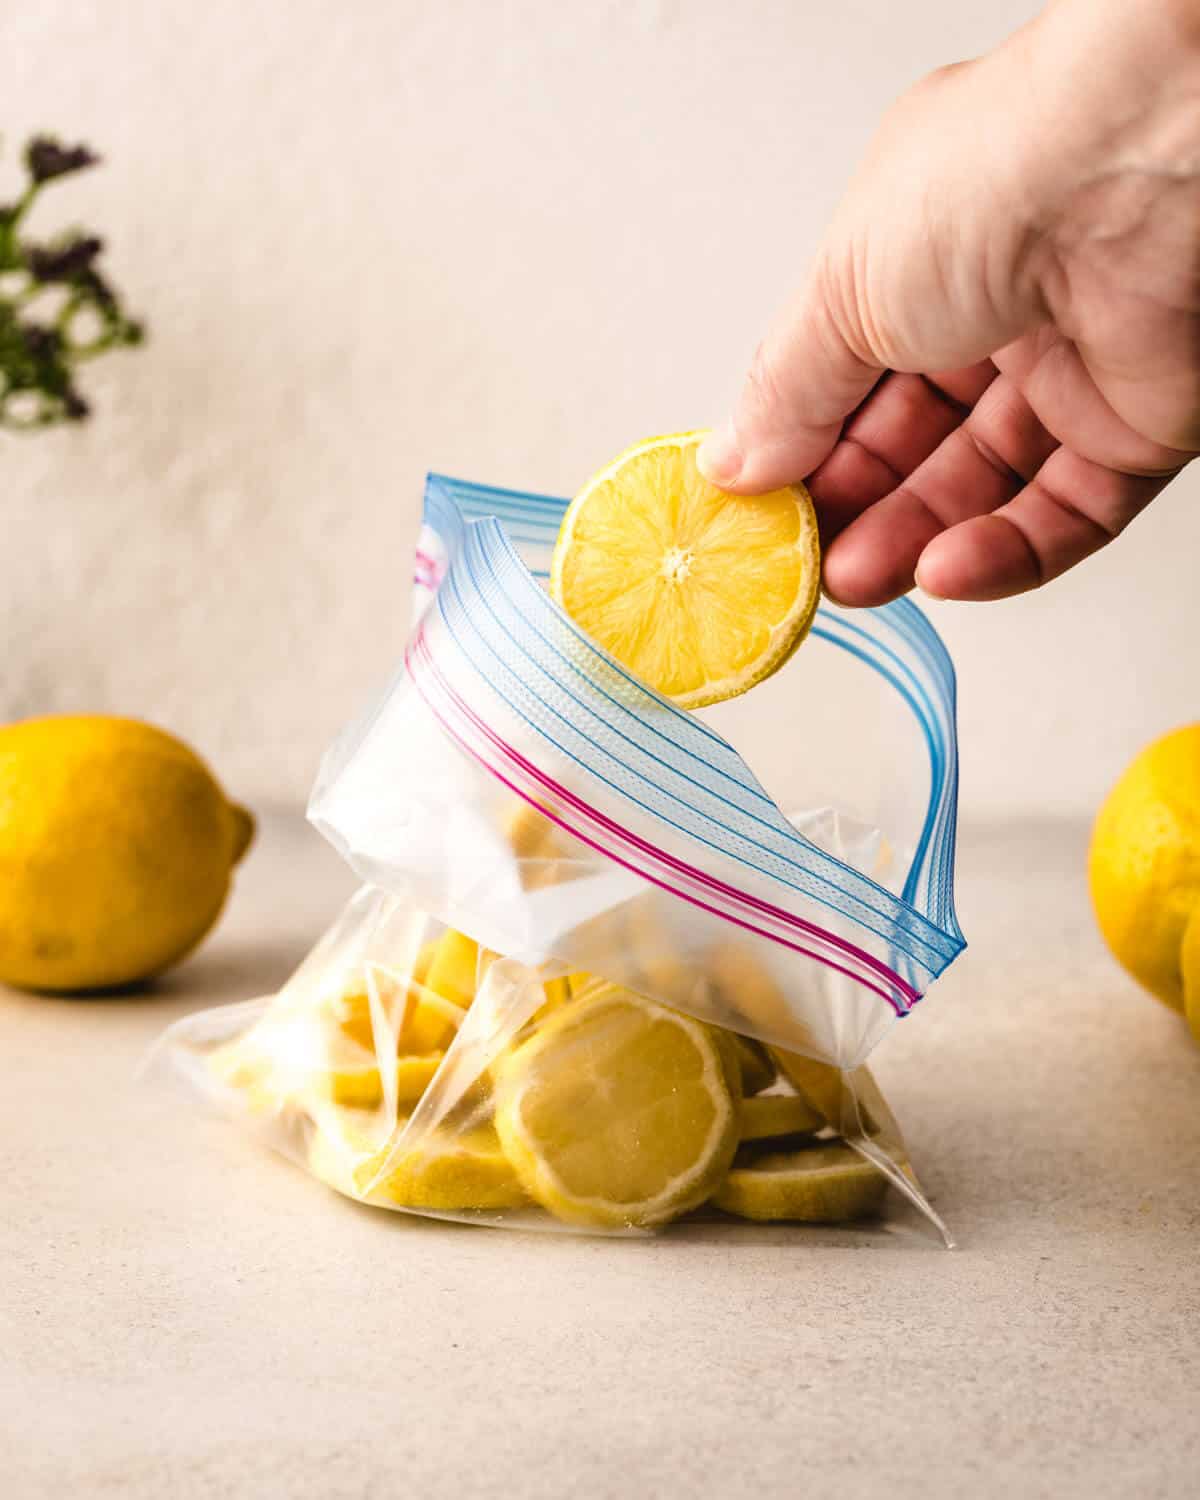 How long do lemons last